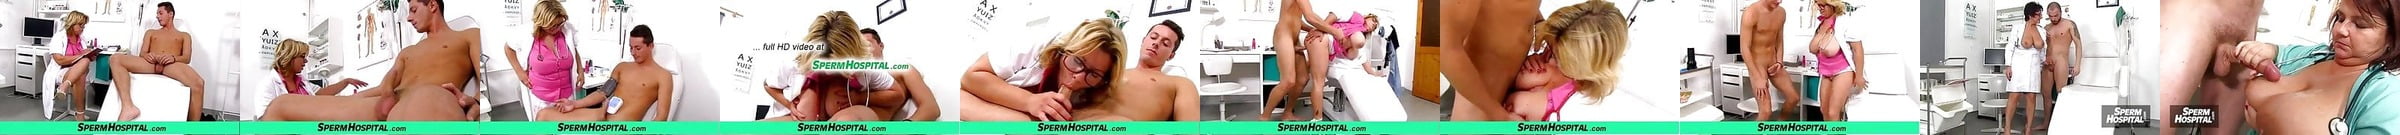 Sperm Hospital Video Porno Xhamster